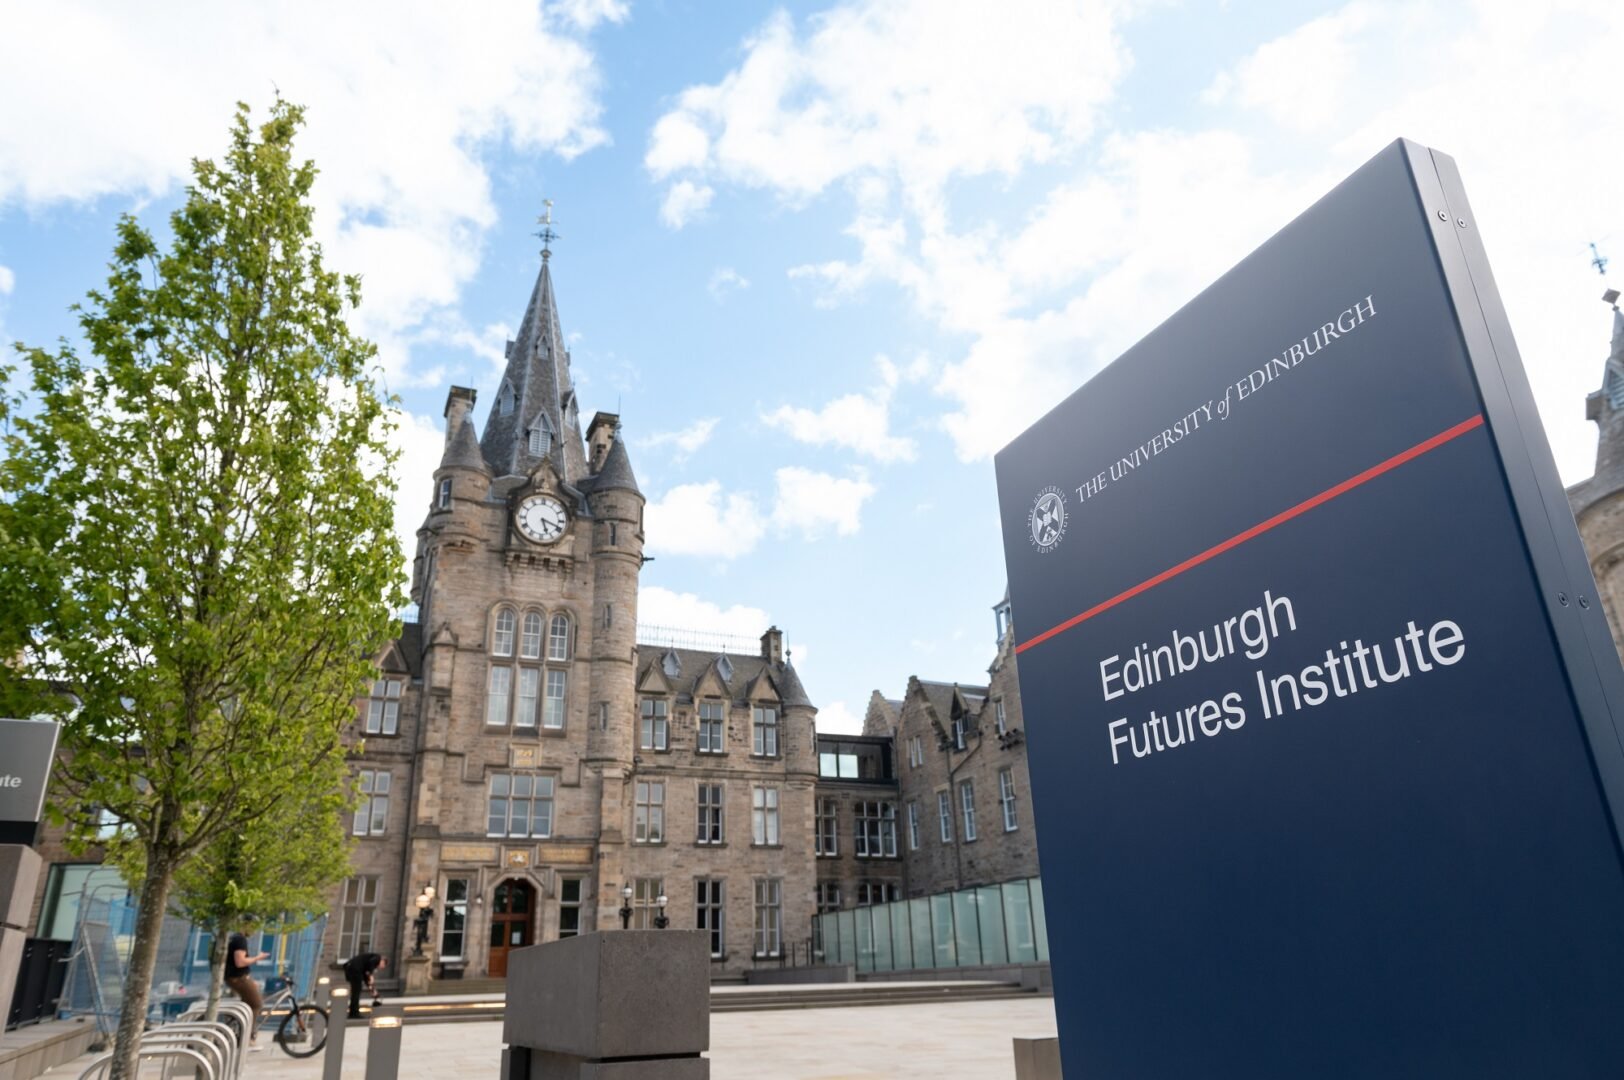 Exterior of Edinburgh Futures Institute